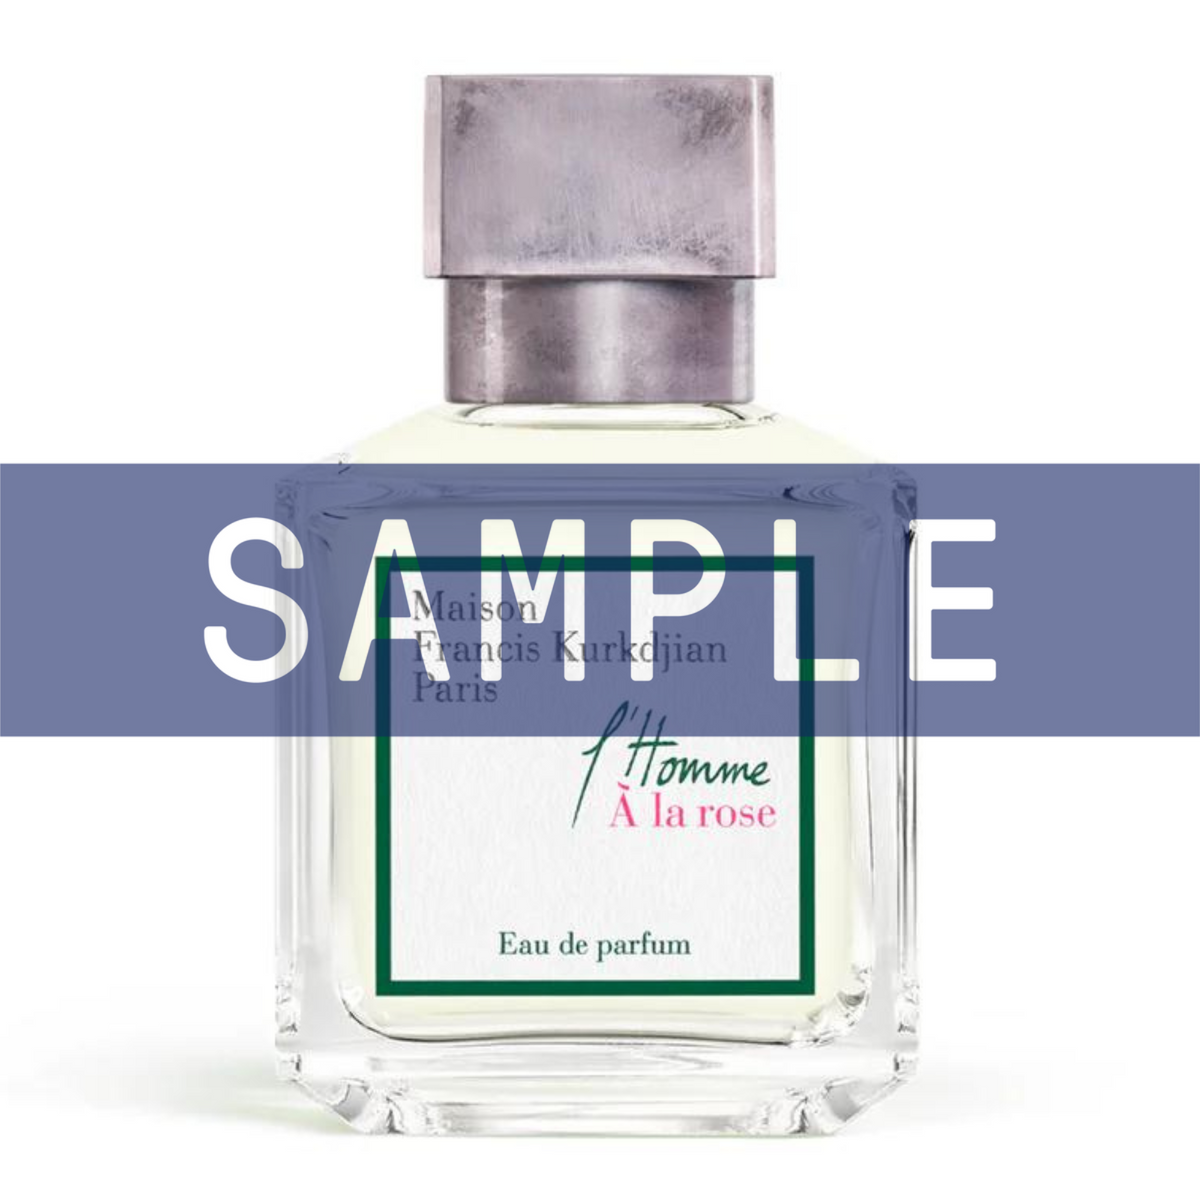 Primary Image of Sample - L'Homme A La Rose Eau De Parfum